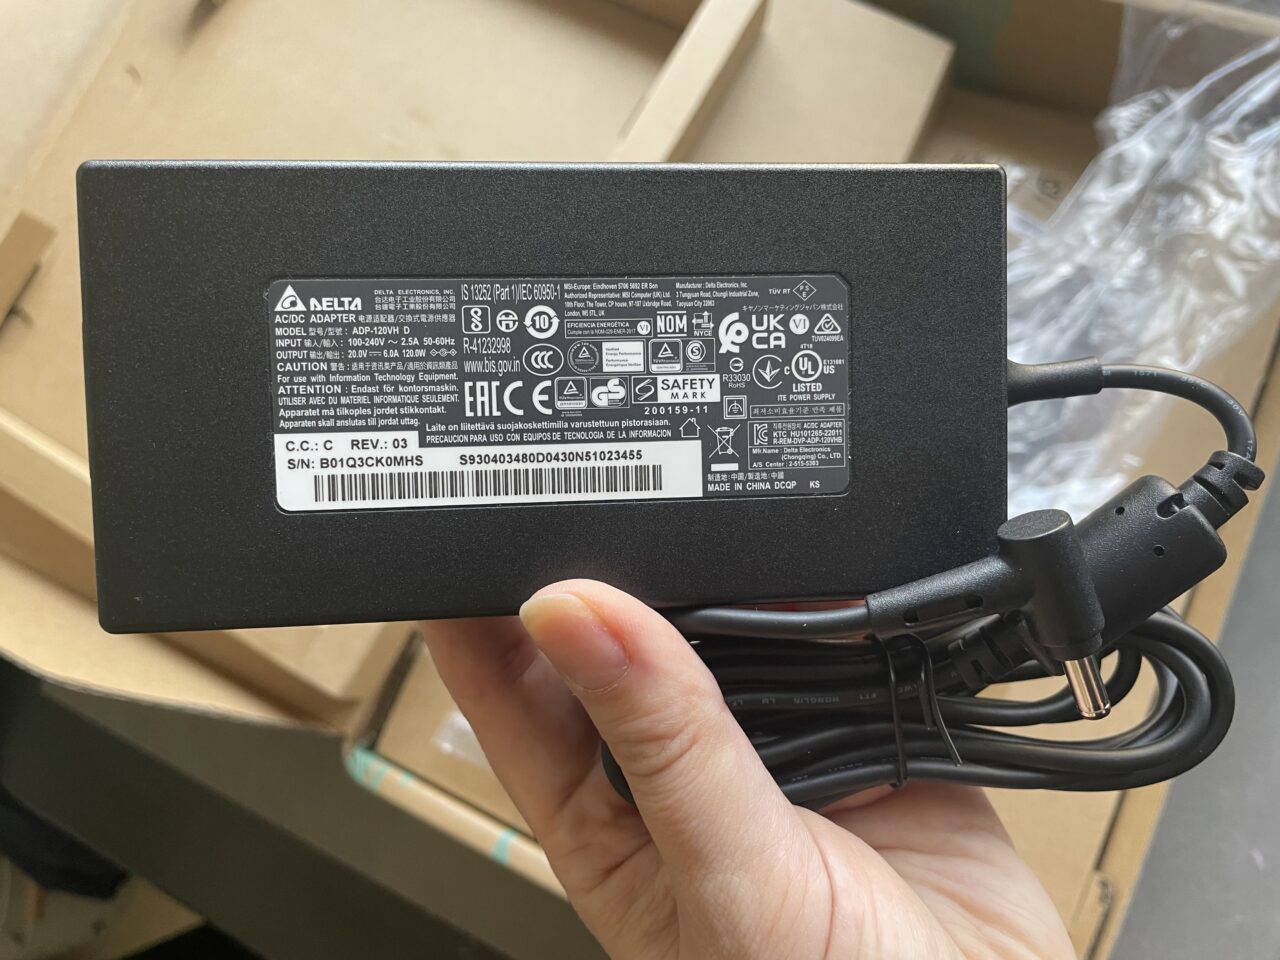 Czarny zasilacz sieciowy marki Delta Electronics trzymany w dłoni na tle kartonowych pudeł, z widocznymi etykietami i specyfikacjami na górnej stronie oraz złączem kabla zasilającego.